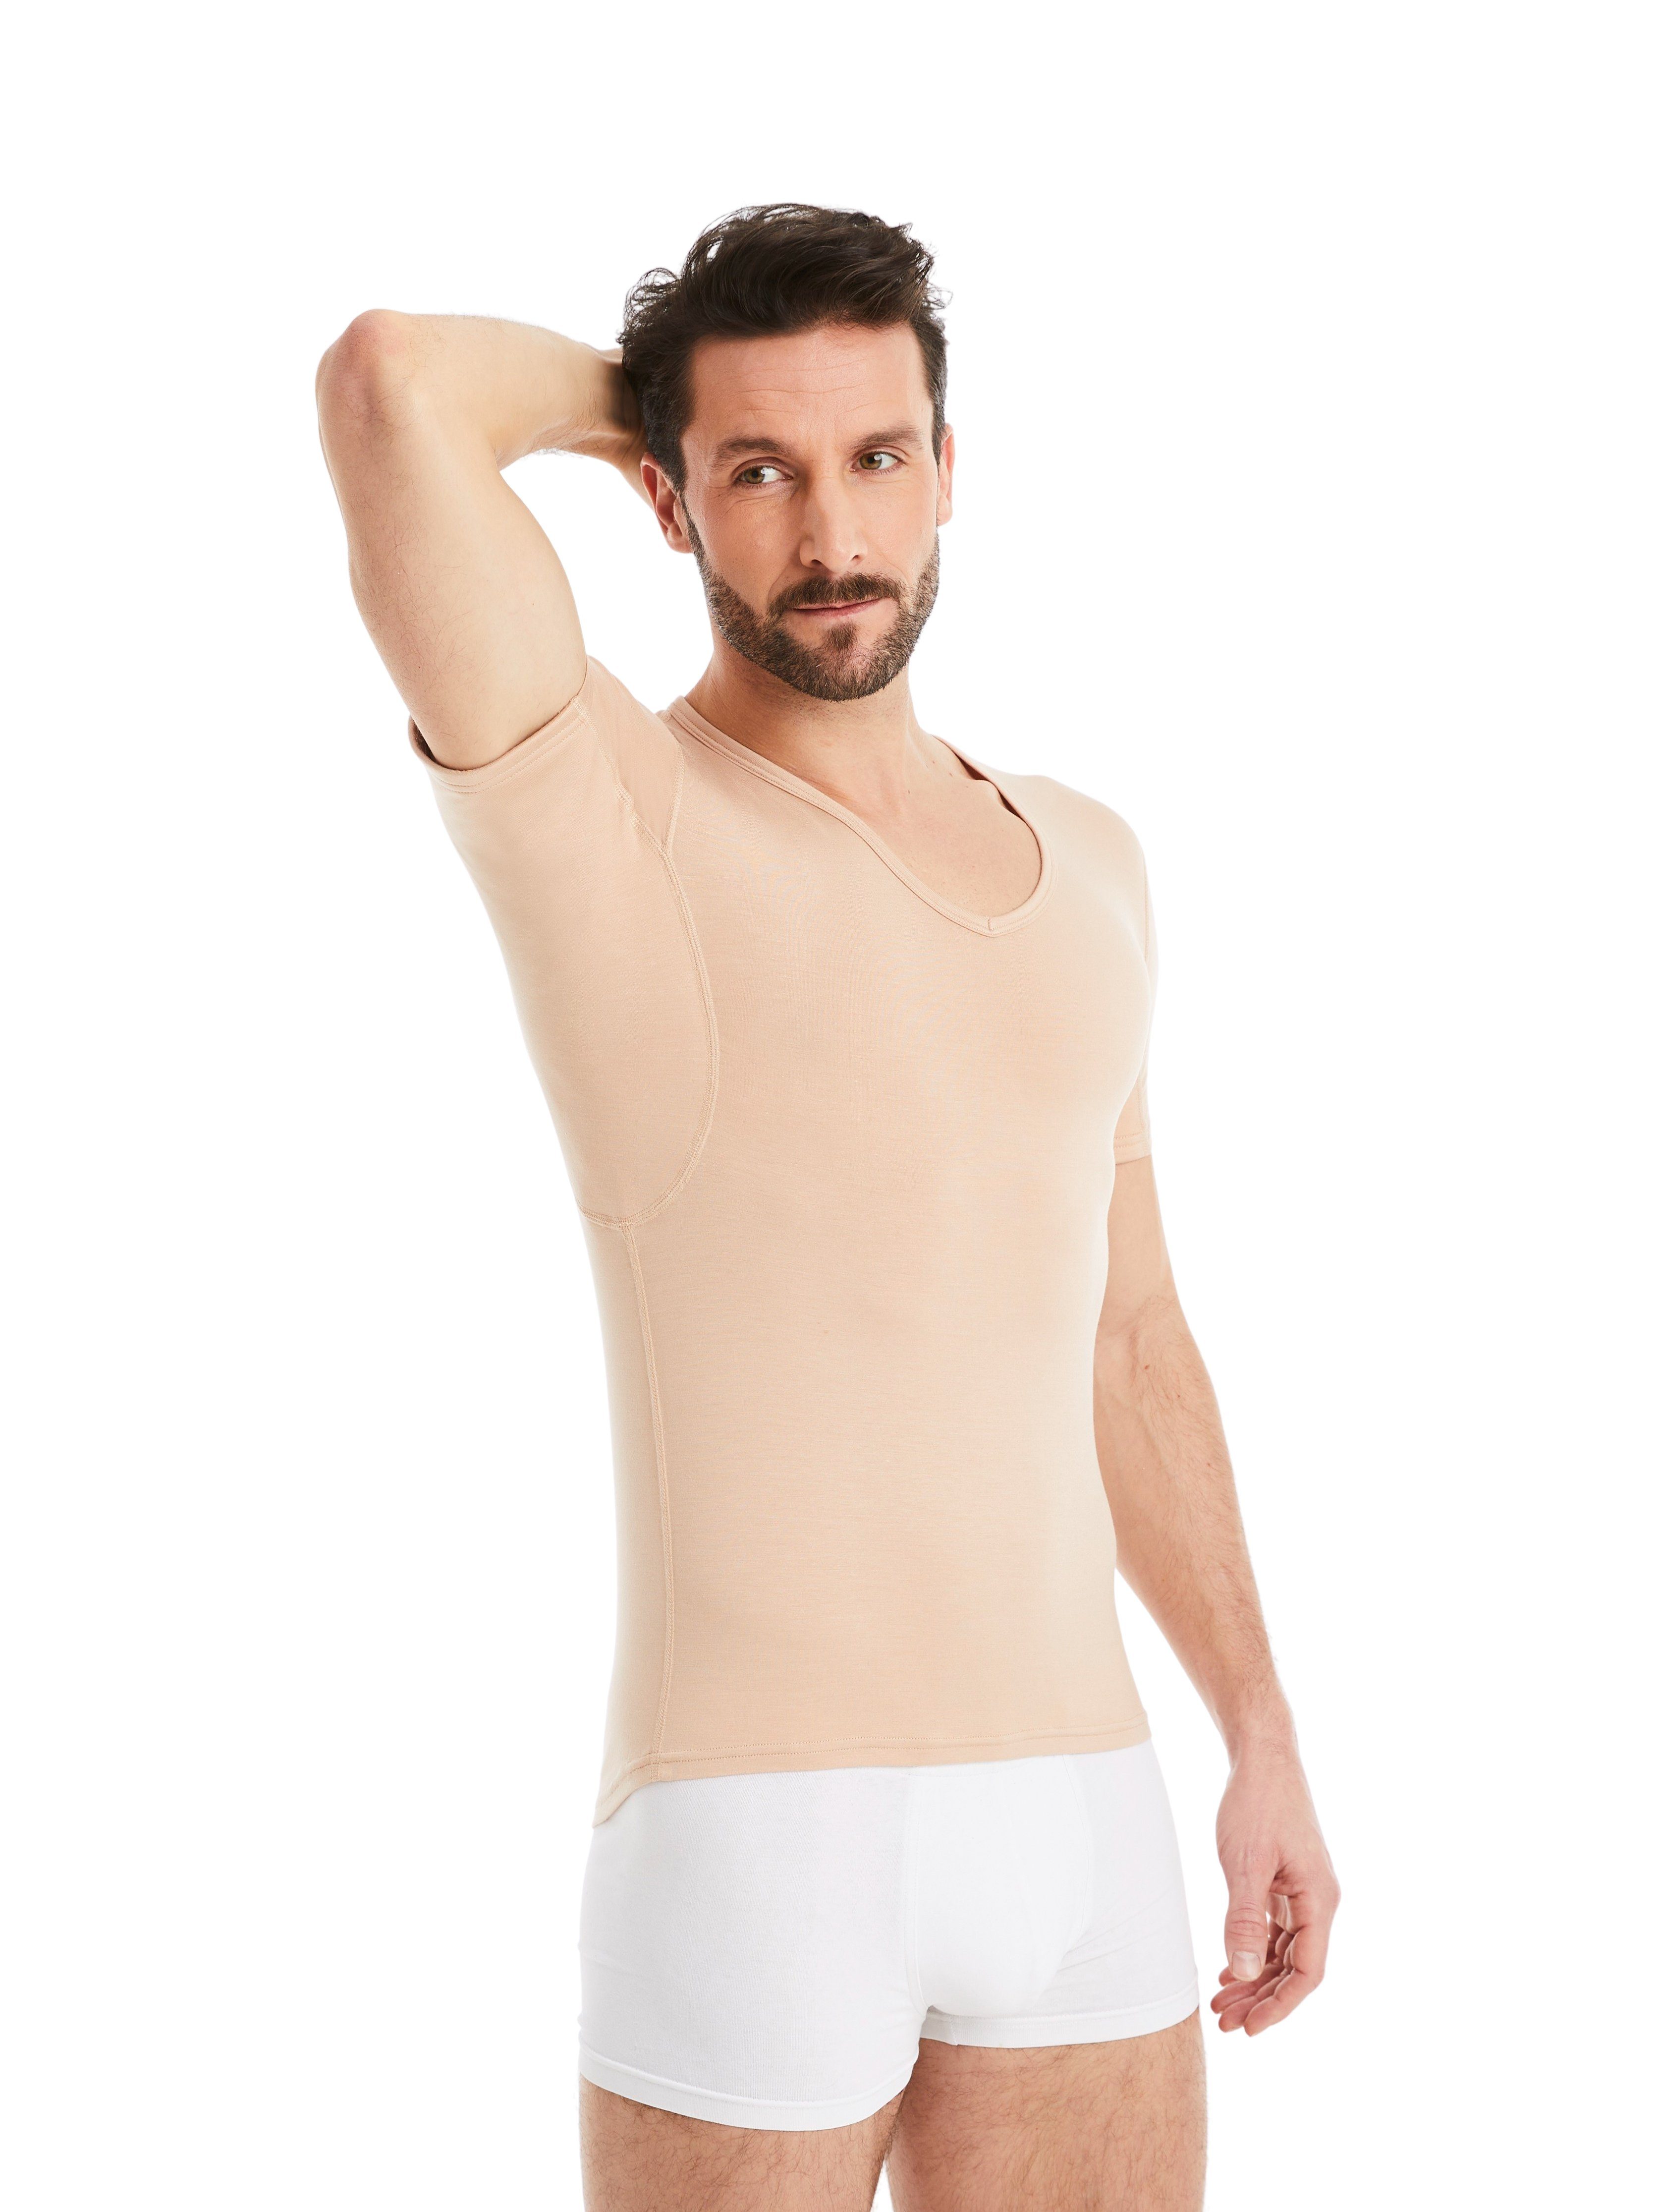 Schweißflecken, Light-Beige Schutz 100% Unterhemd Herren Wirkung Design vor FINN garantierte Unterhemd Anti-Schweiß